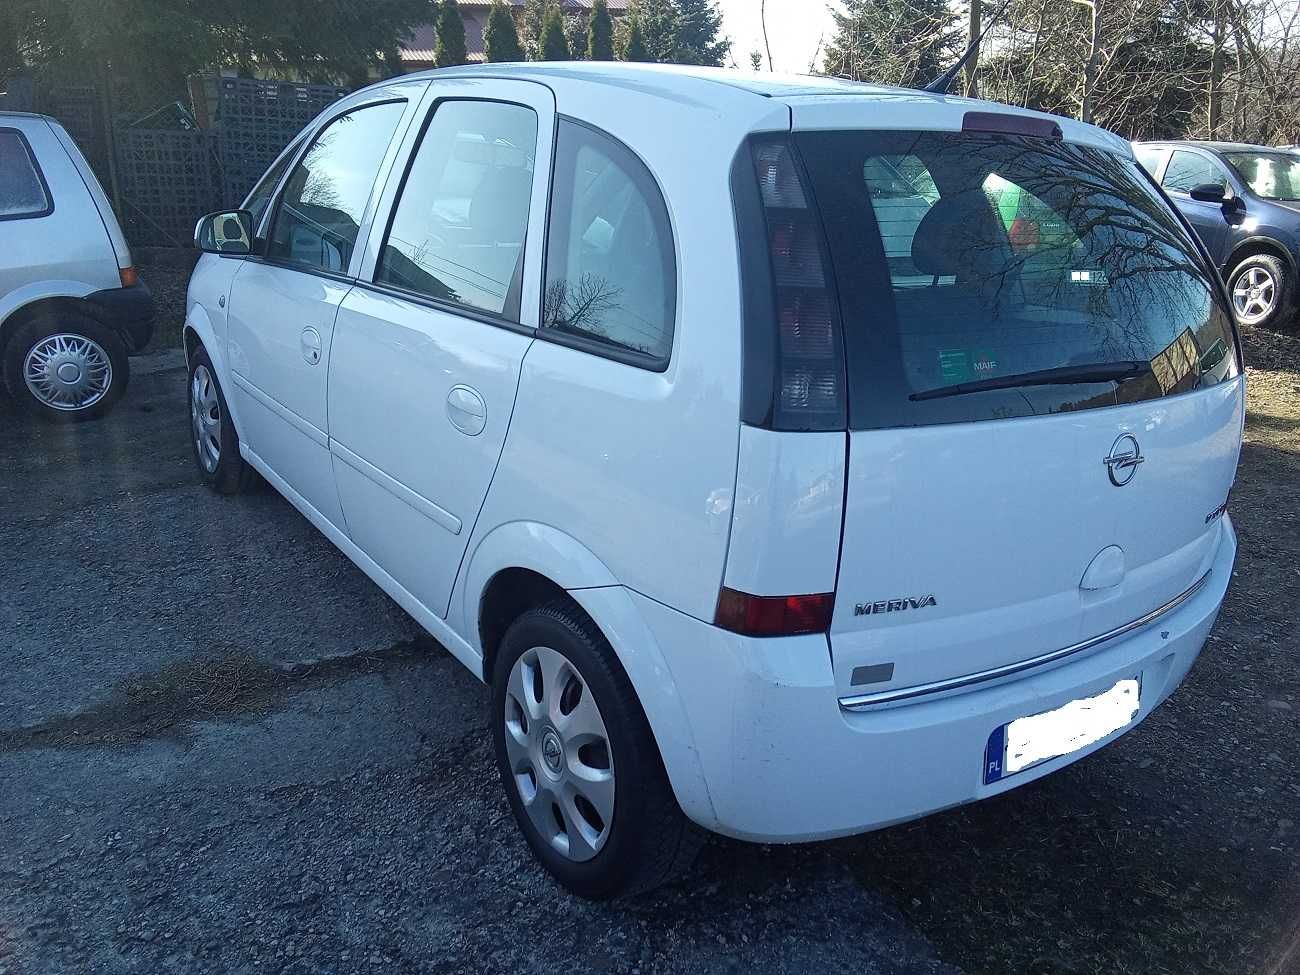 Opel Meriva 1,7 CDTI, 2008R, klima, BEZ KOROZJI, 1 WŁAŚCICIEL